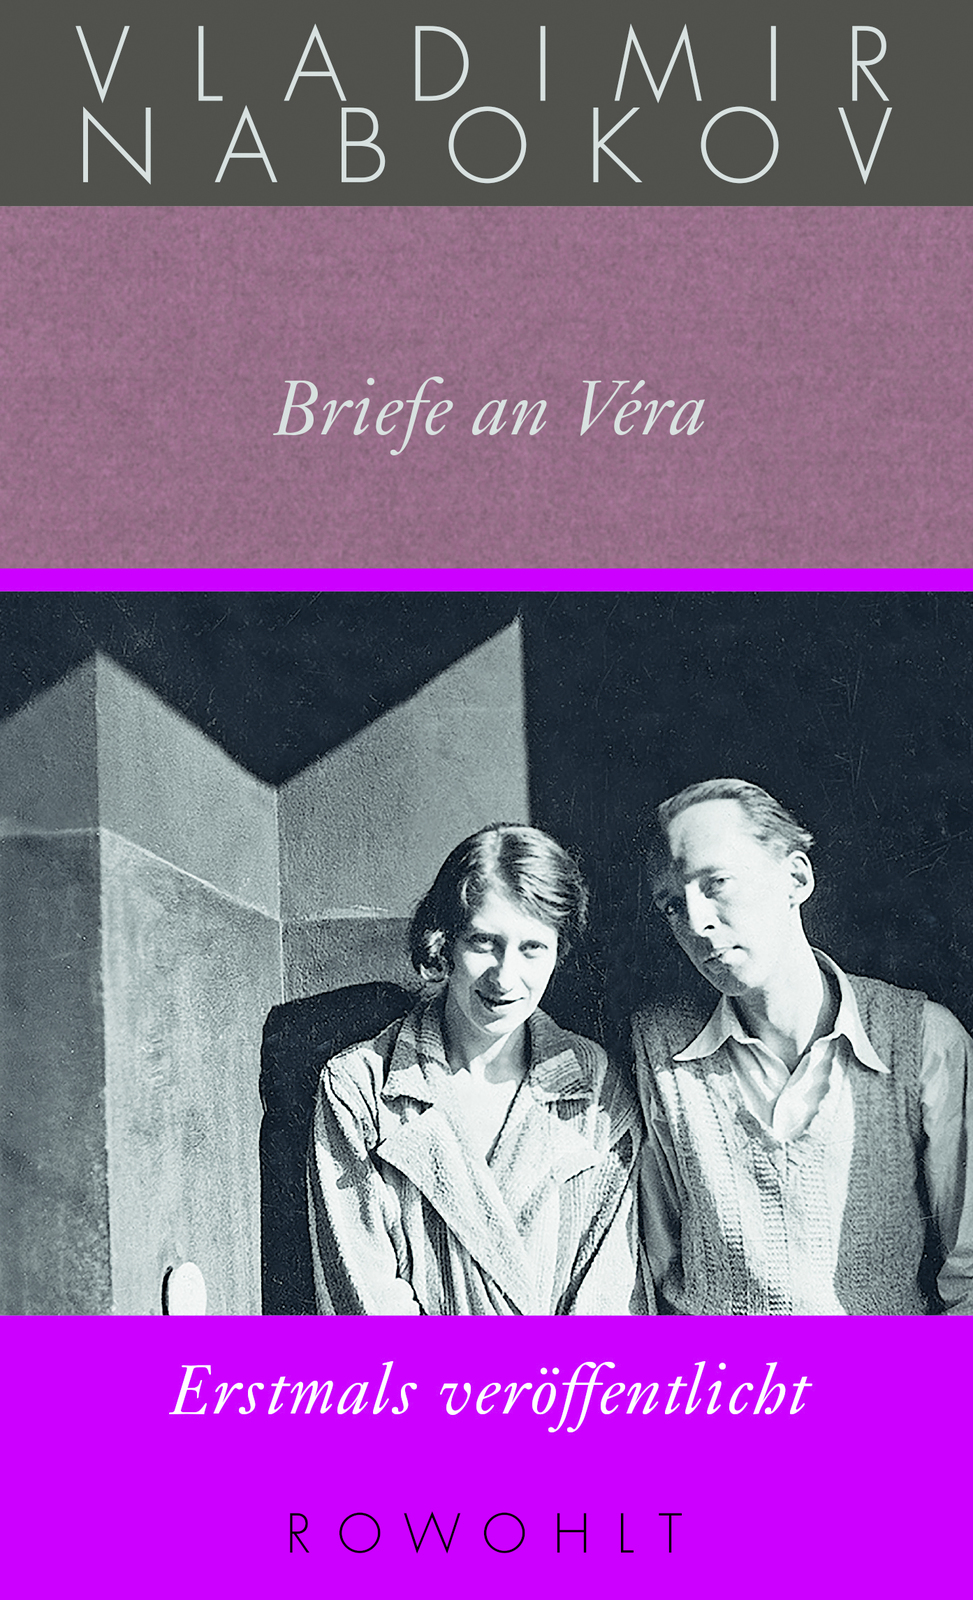 Vladimir Nabokov, Briefe an Vera, Gesammelte Werke Bd. 24, Rowohlt, 1008 Seiten, 38 Euro